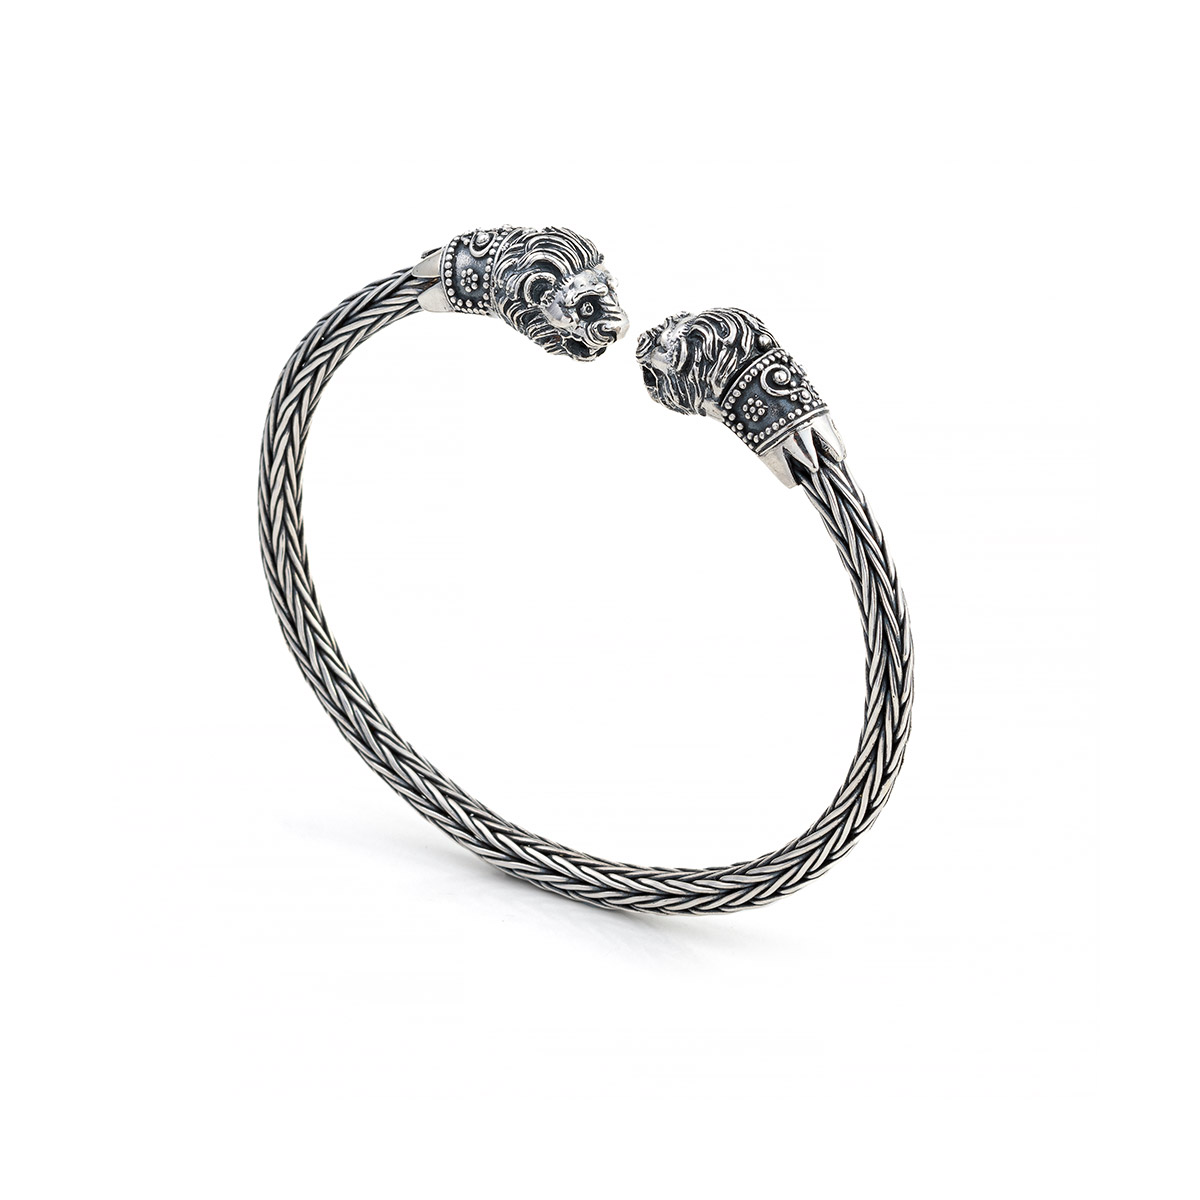 Silver Cuff Bracelet – Lion's Head | CultureTaste